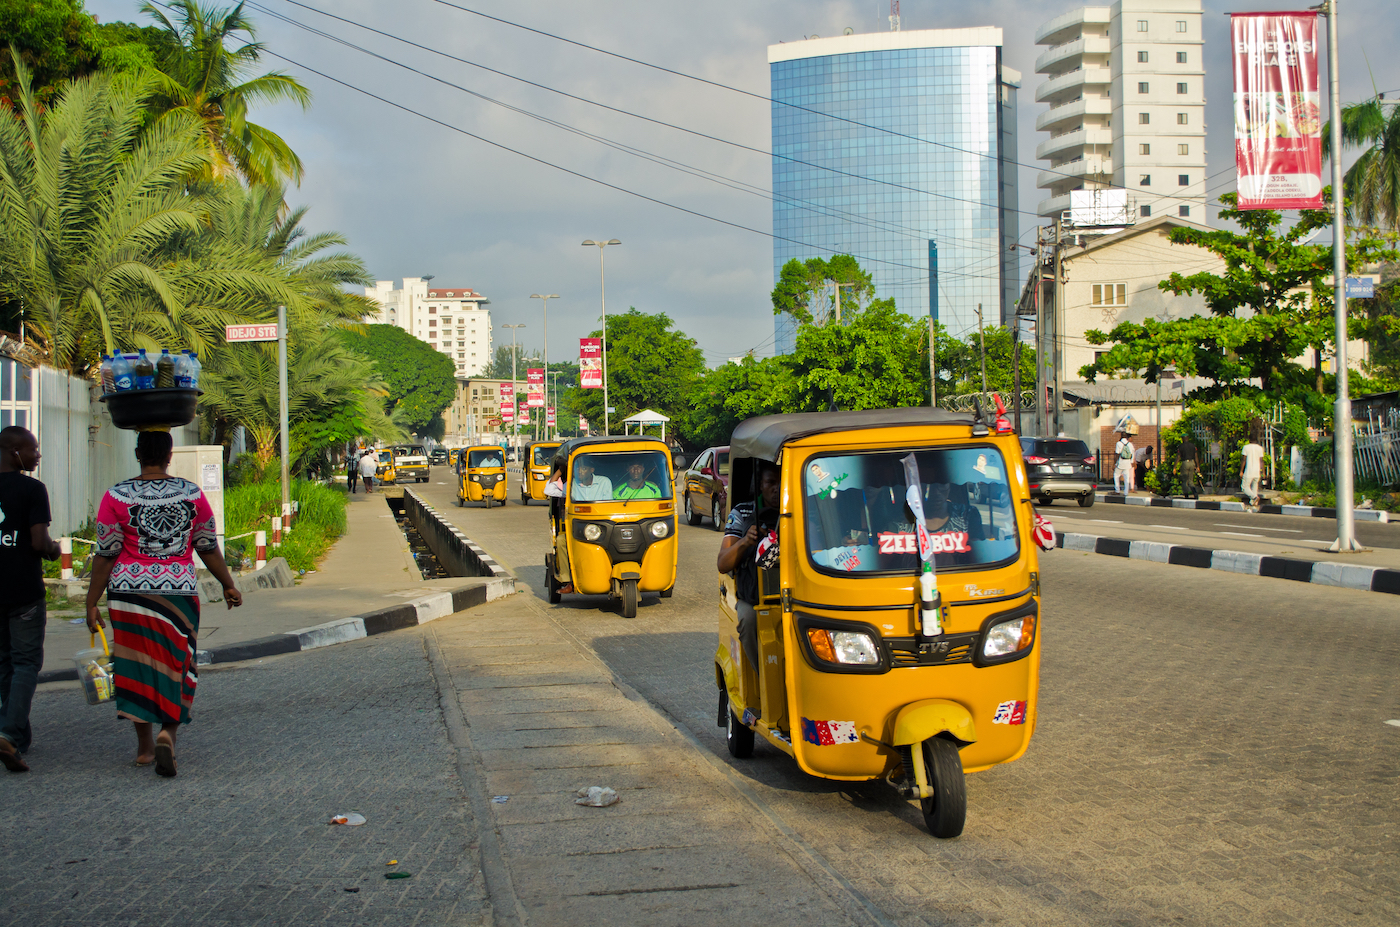 Gele tuktuks in Lagos, Nigeria